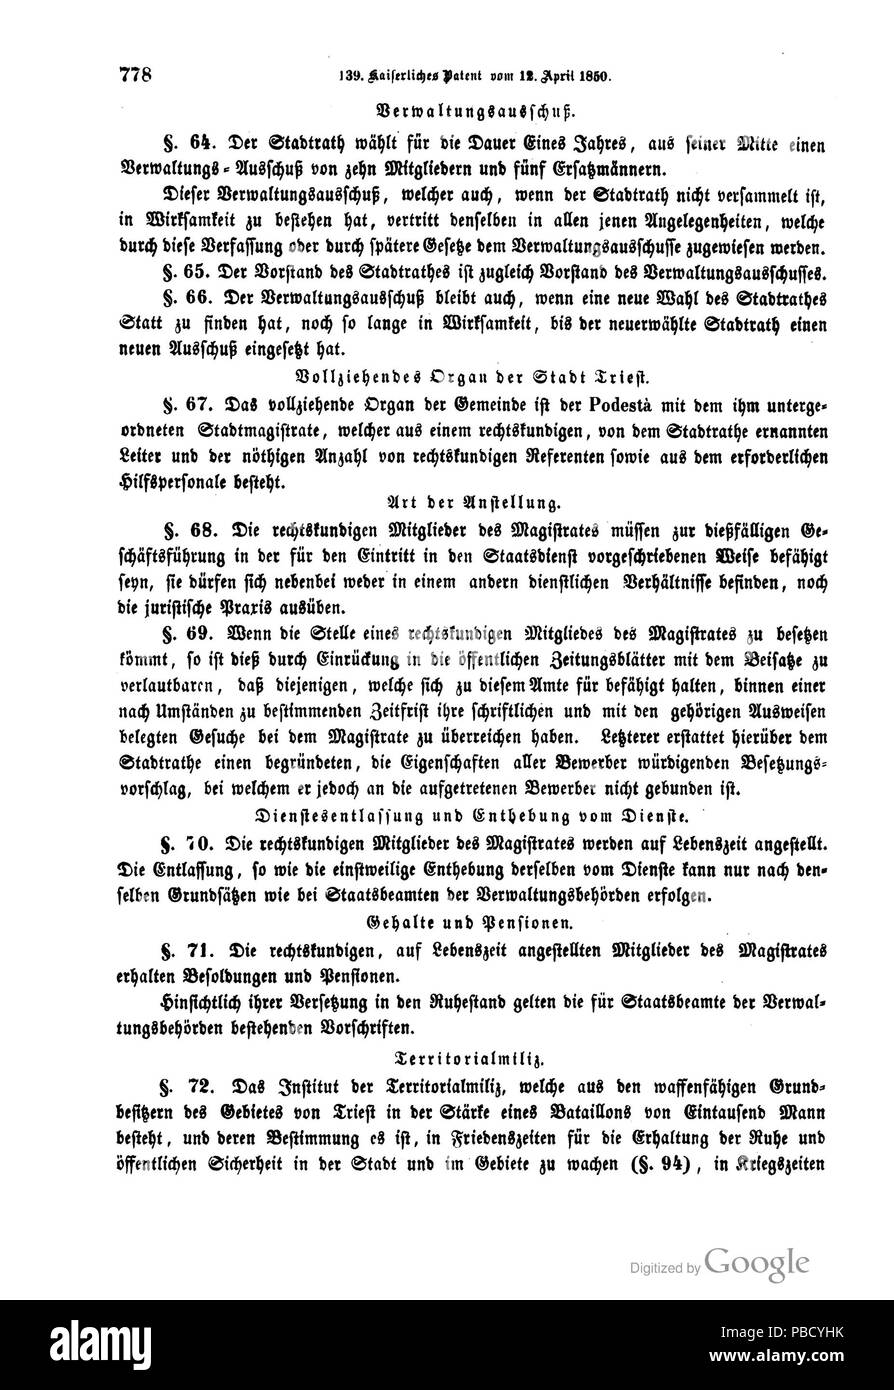 1251 Reichsgesetzblatt (Austria) 1850 0778 Stock Photo